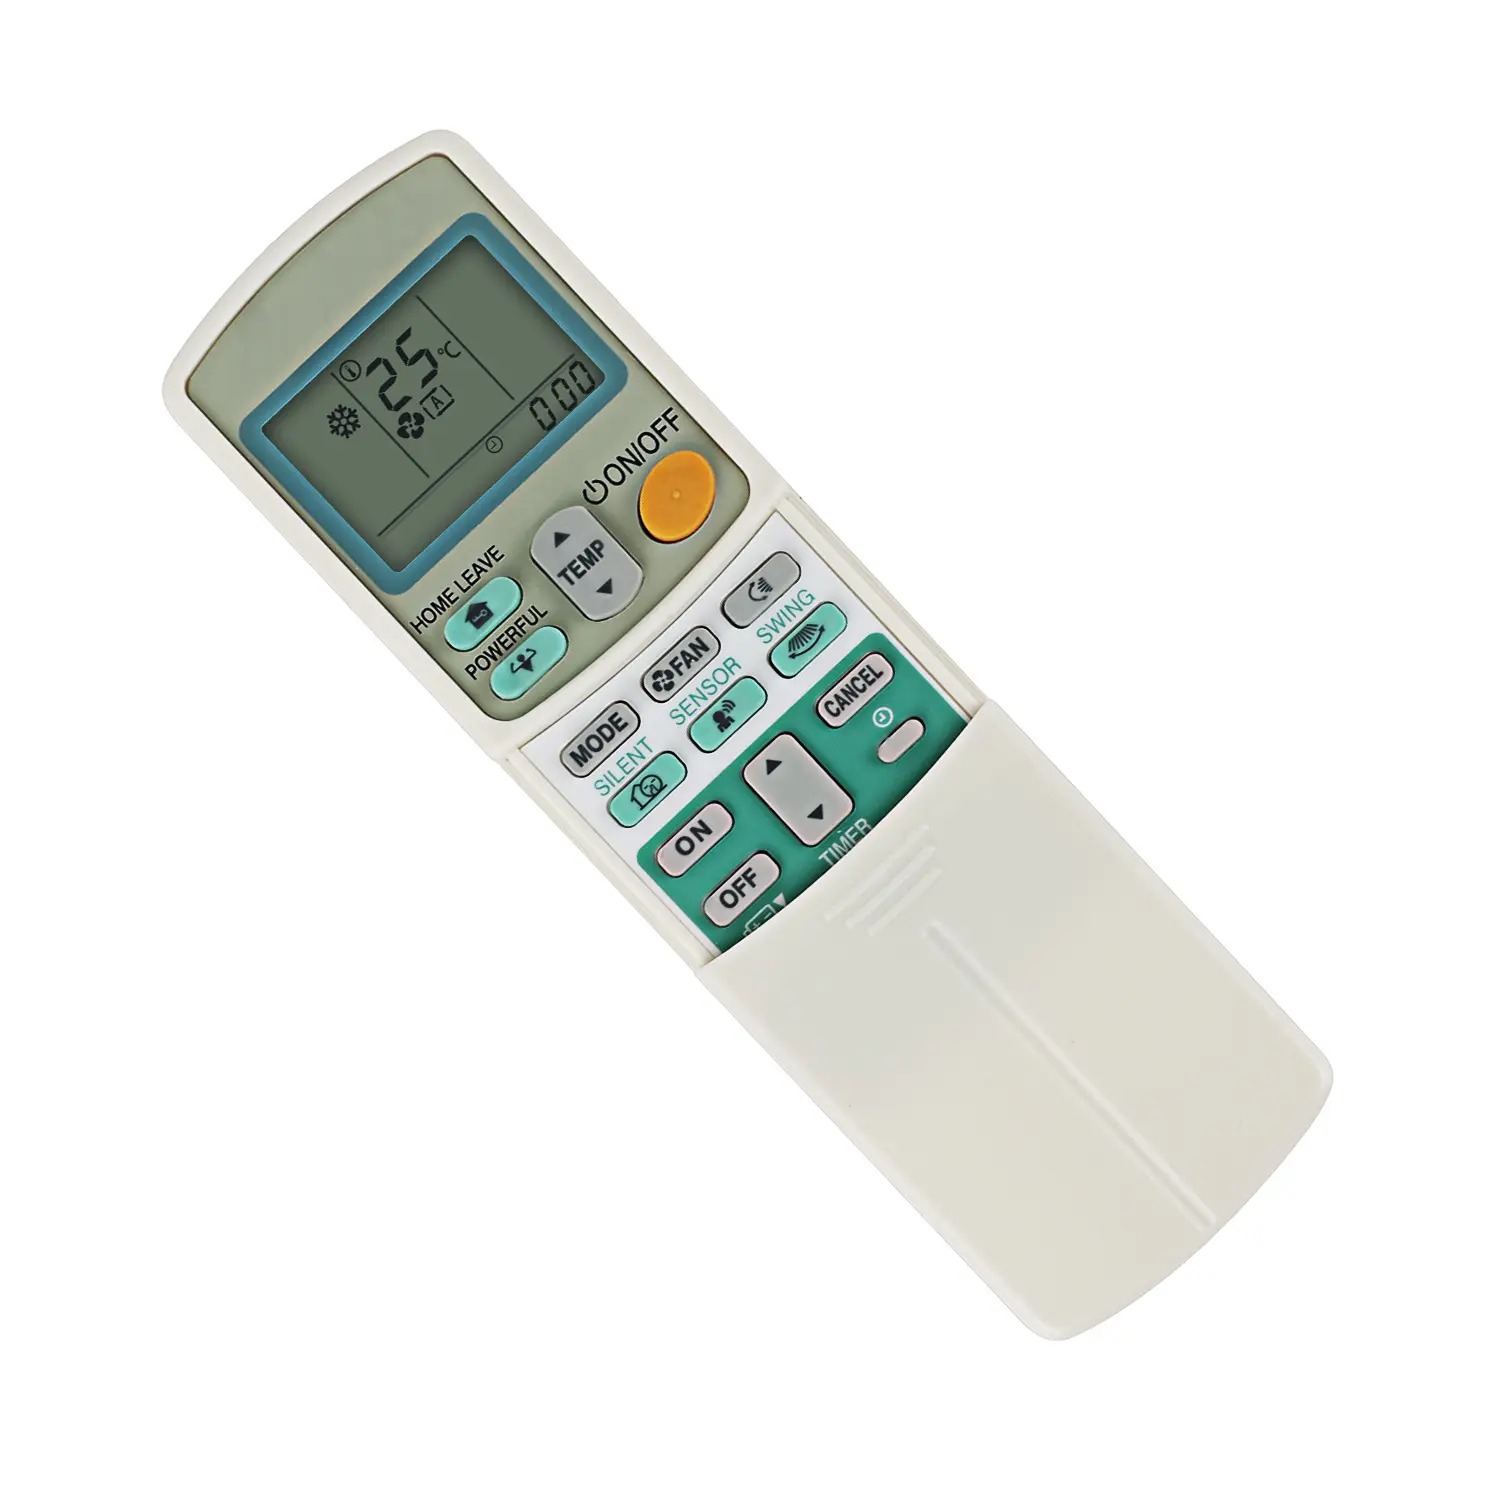 Remote Control for Daikin ARC433B67 ARC433A1 ARC433B70 ARC433A70 ARC433A21 ARC433A46 arc433A75 Air Conditioner with Heating Mode